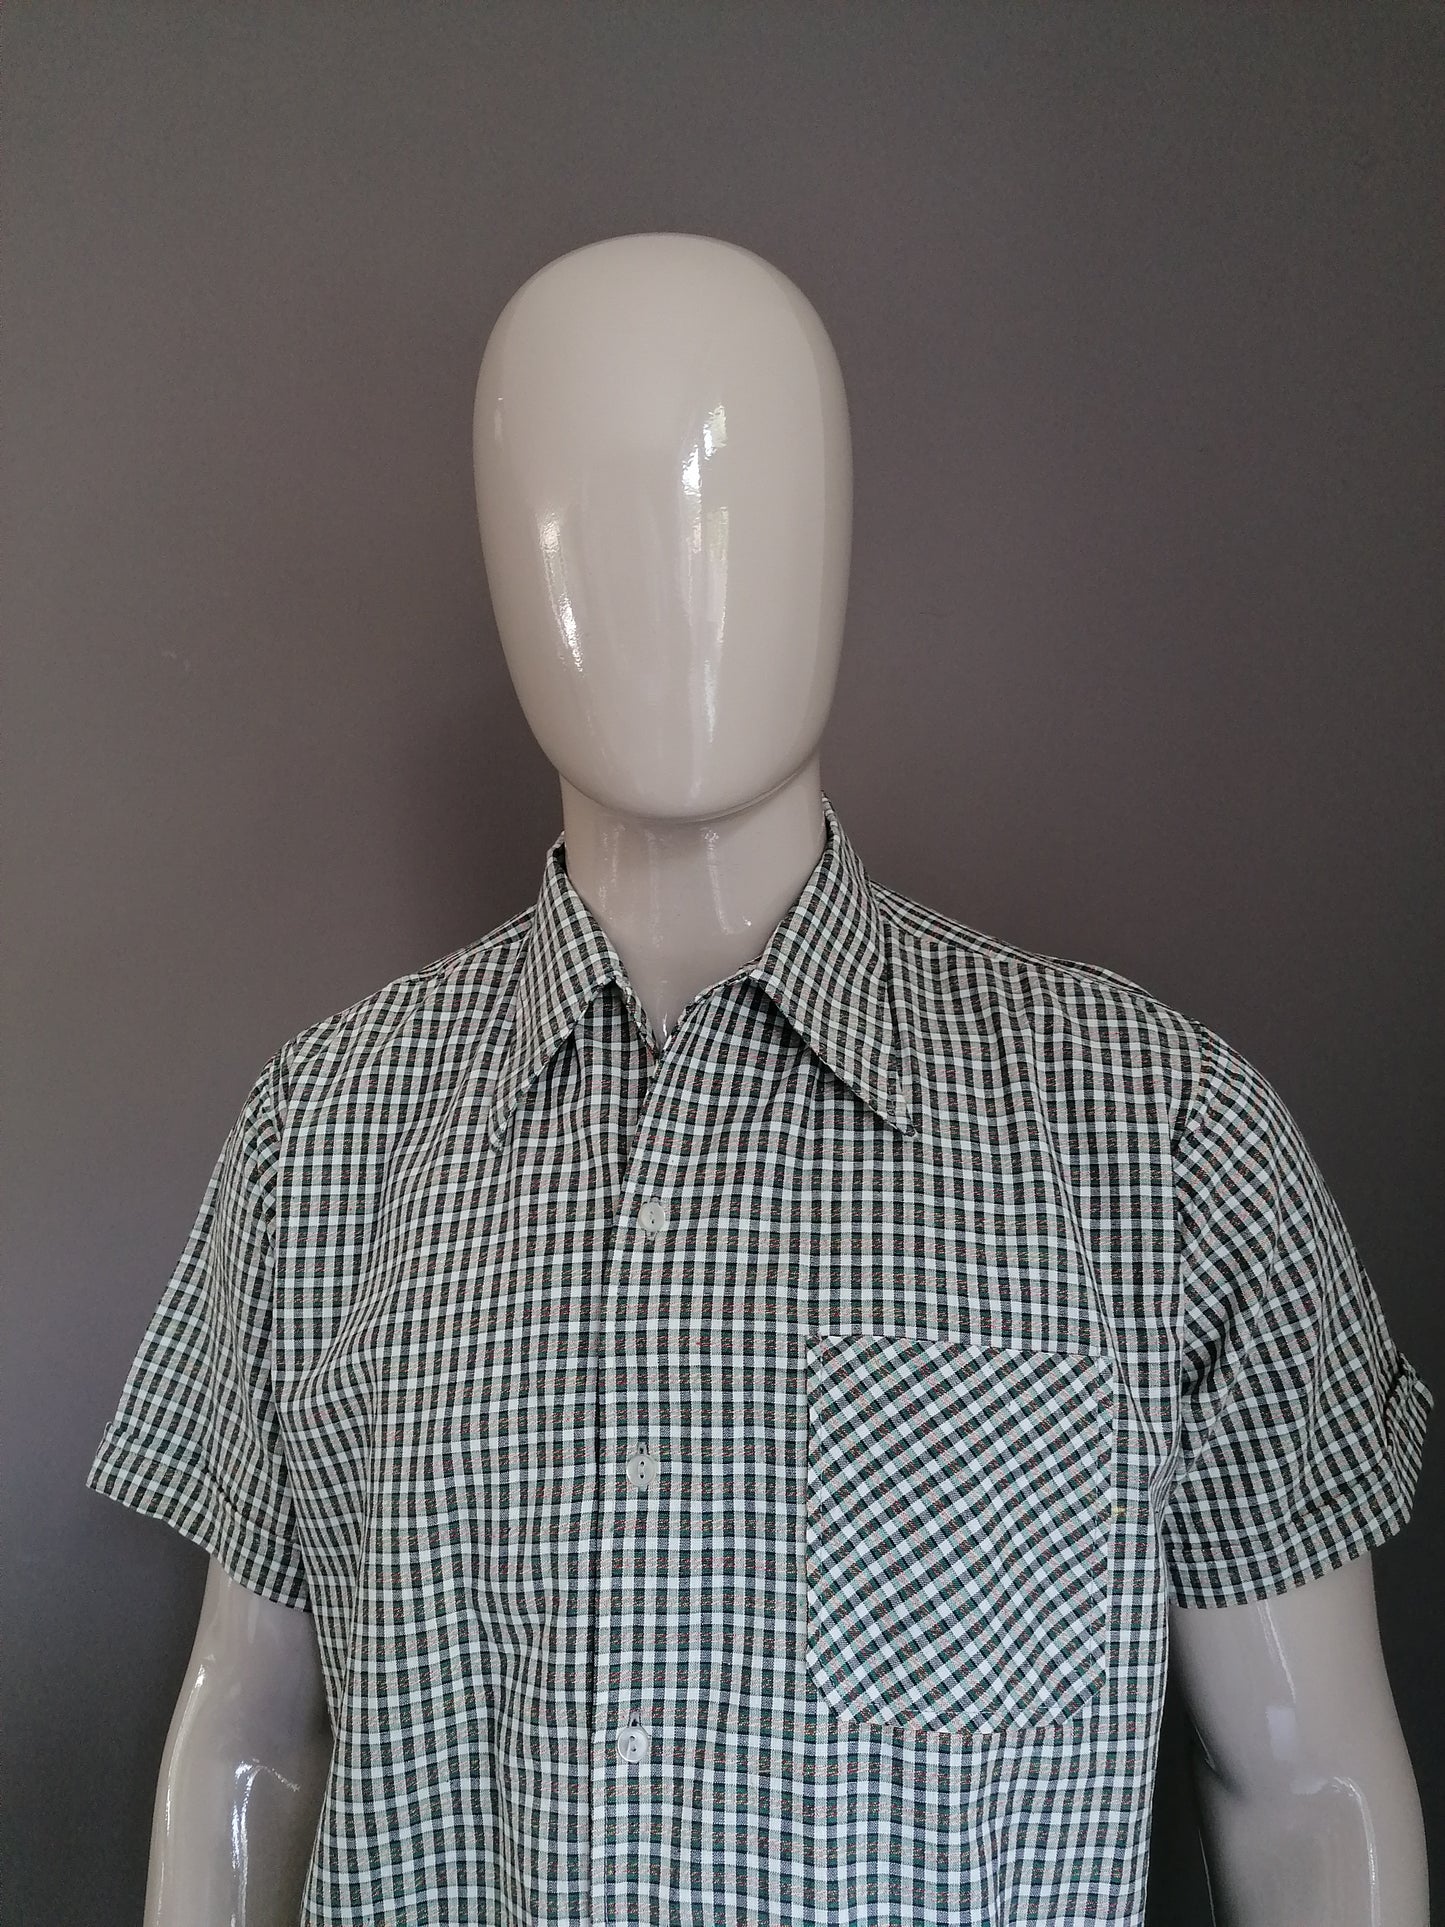 Camisa de manga corta de los años 70 con collar de puntos. Tamaño XL.